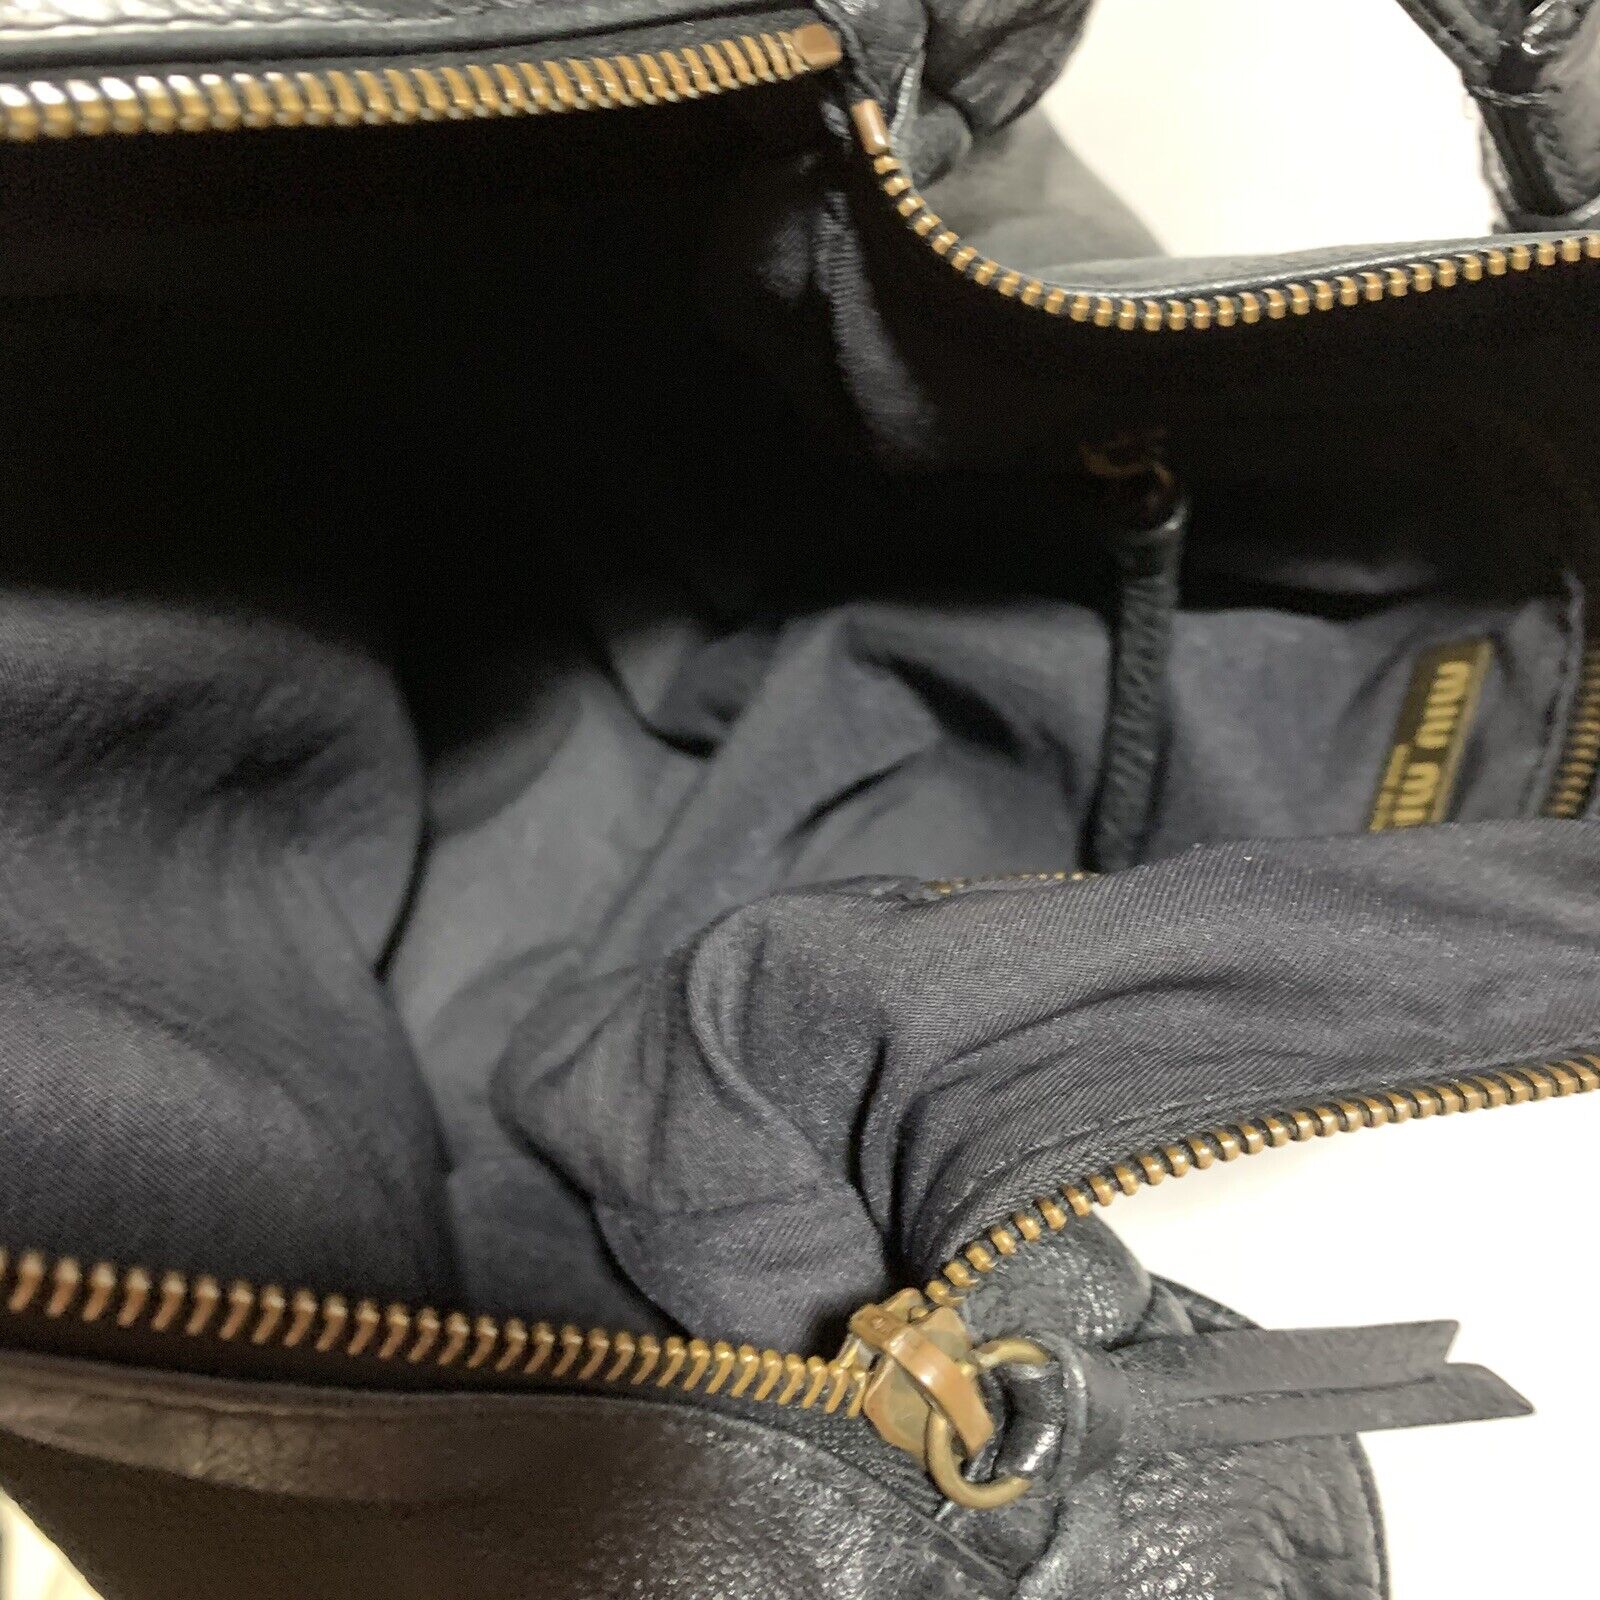 pre-loved auth MIU MIU by PRADA distressed leather ZIP TOP shoulder bag  BLACK